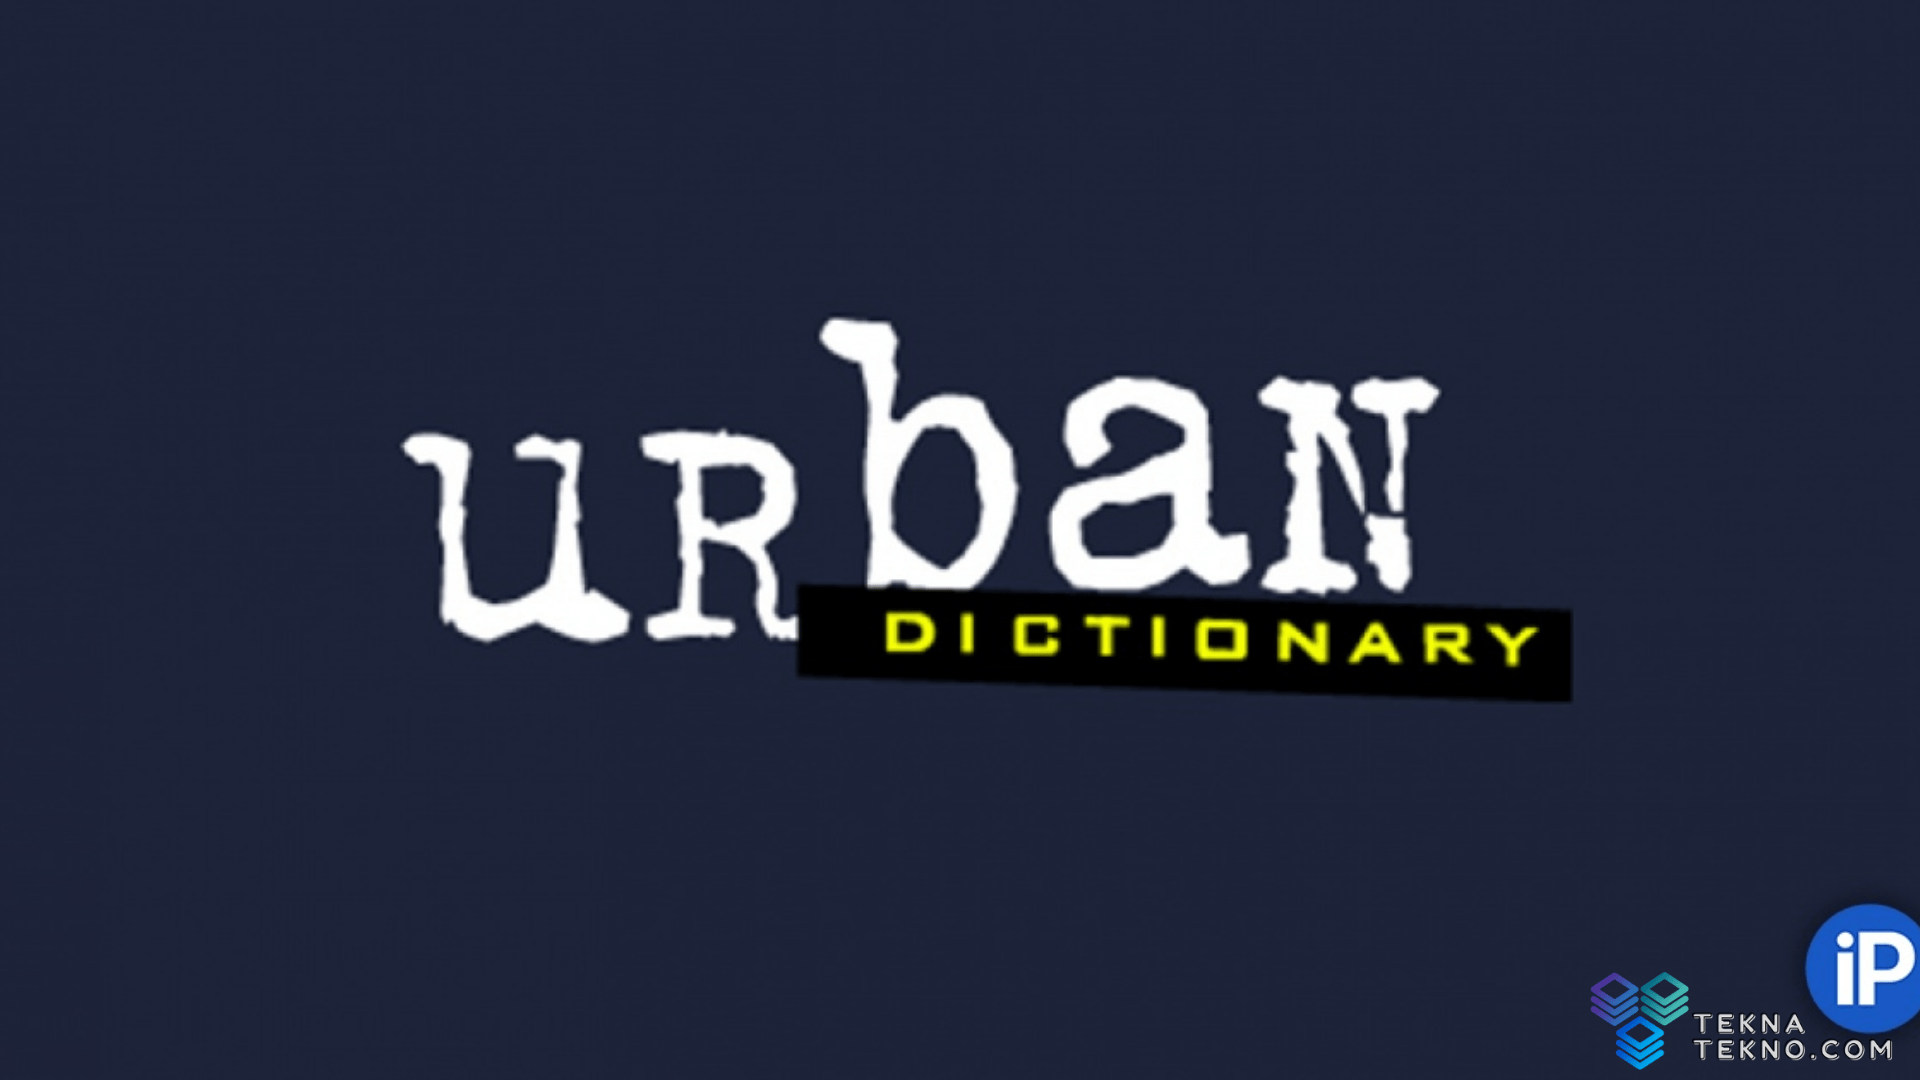 Apa Itu Urban Dictionary Yang Trending di Instagram?